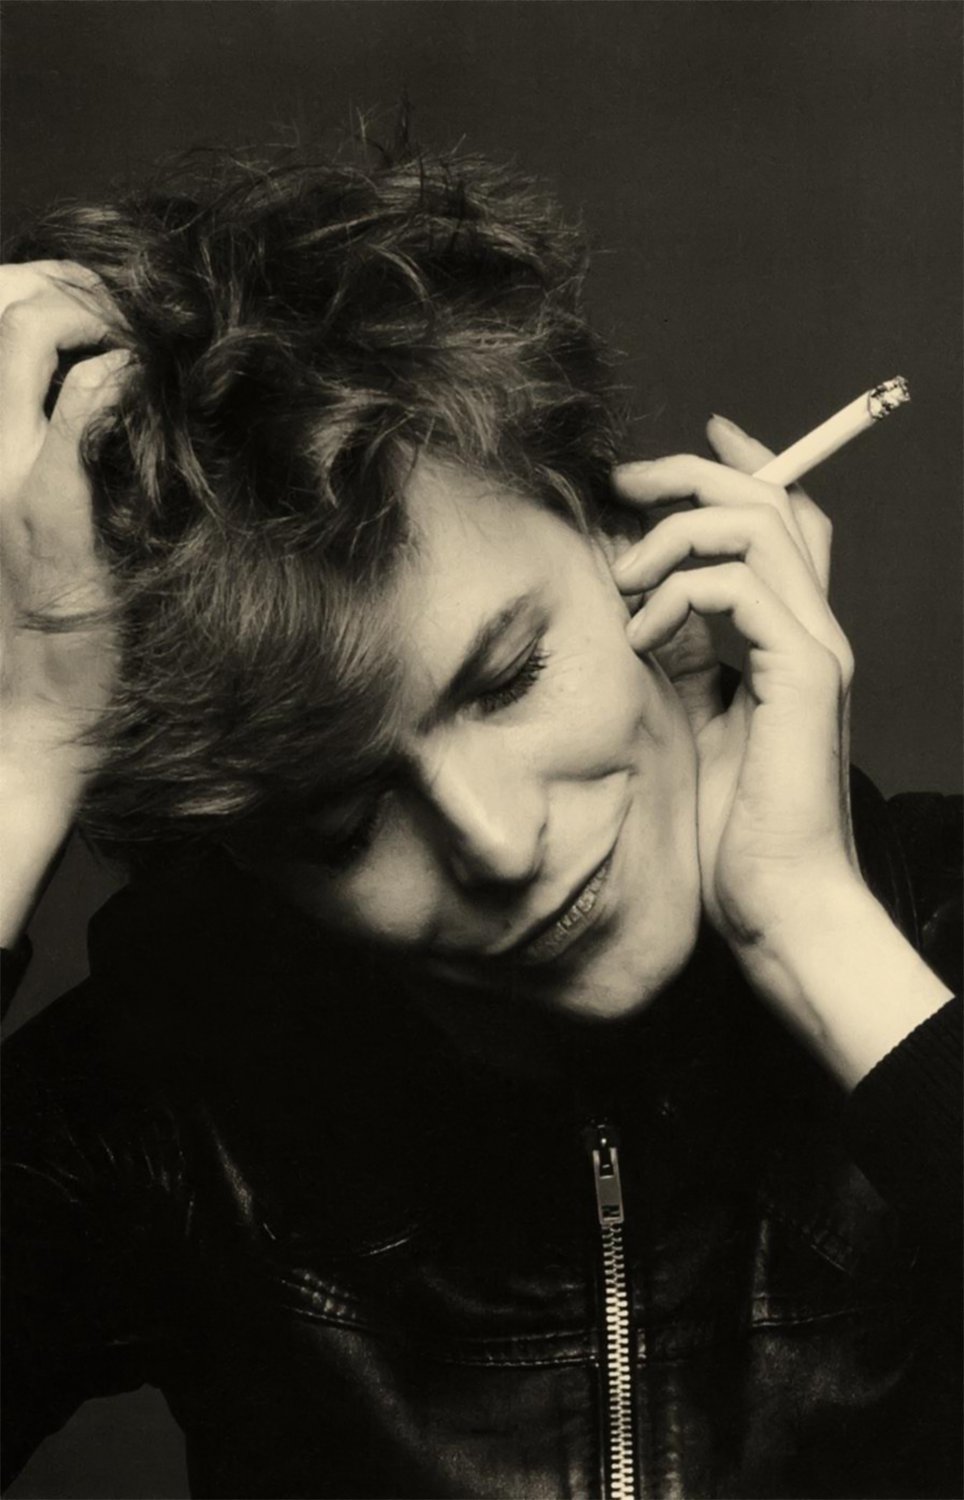 David Bowie  18"x28" (45cm/70cm) Canvas Print